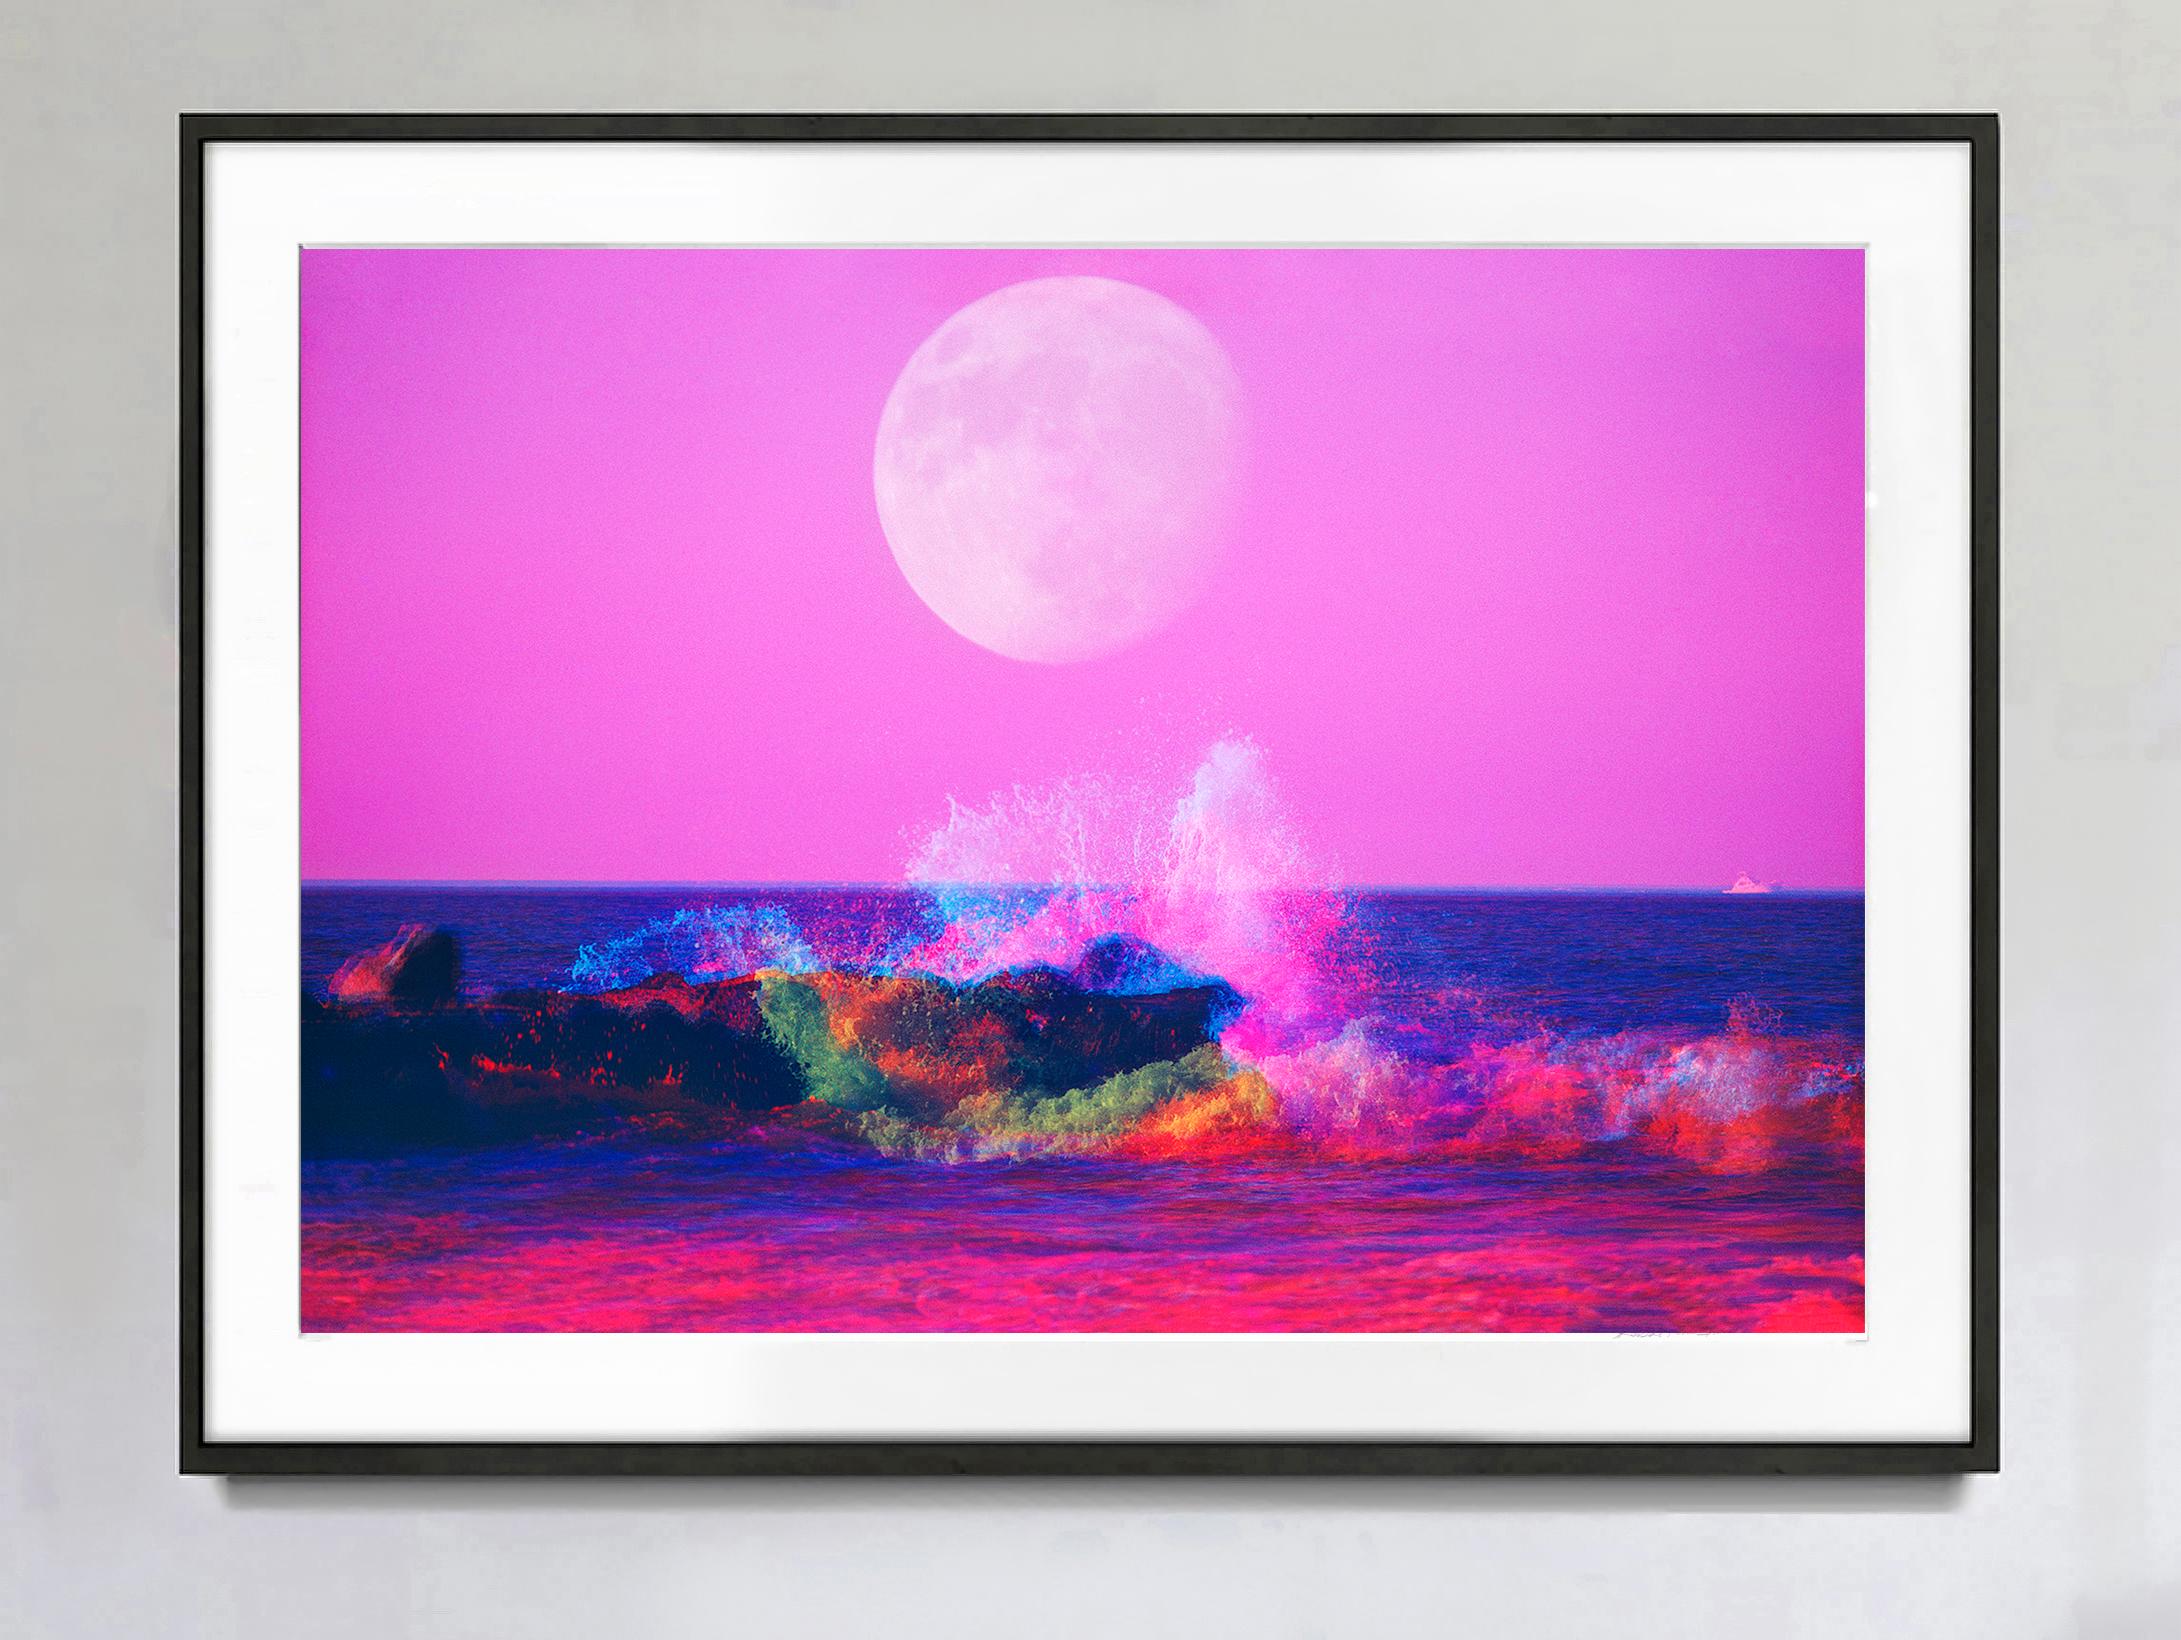 Big Moon über Magentasee - Rosa schrumpfende Wellenwelle an der New Jersey Shore – Photograph von Mitchell Funk